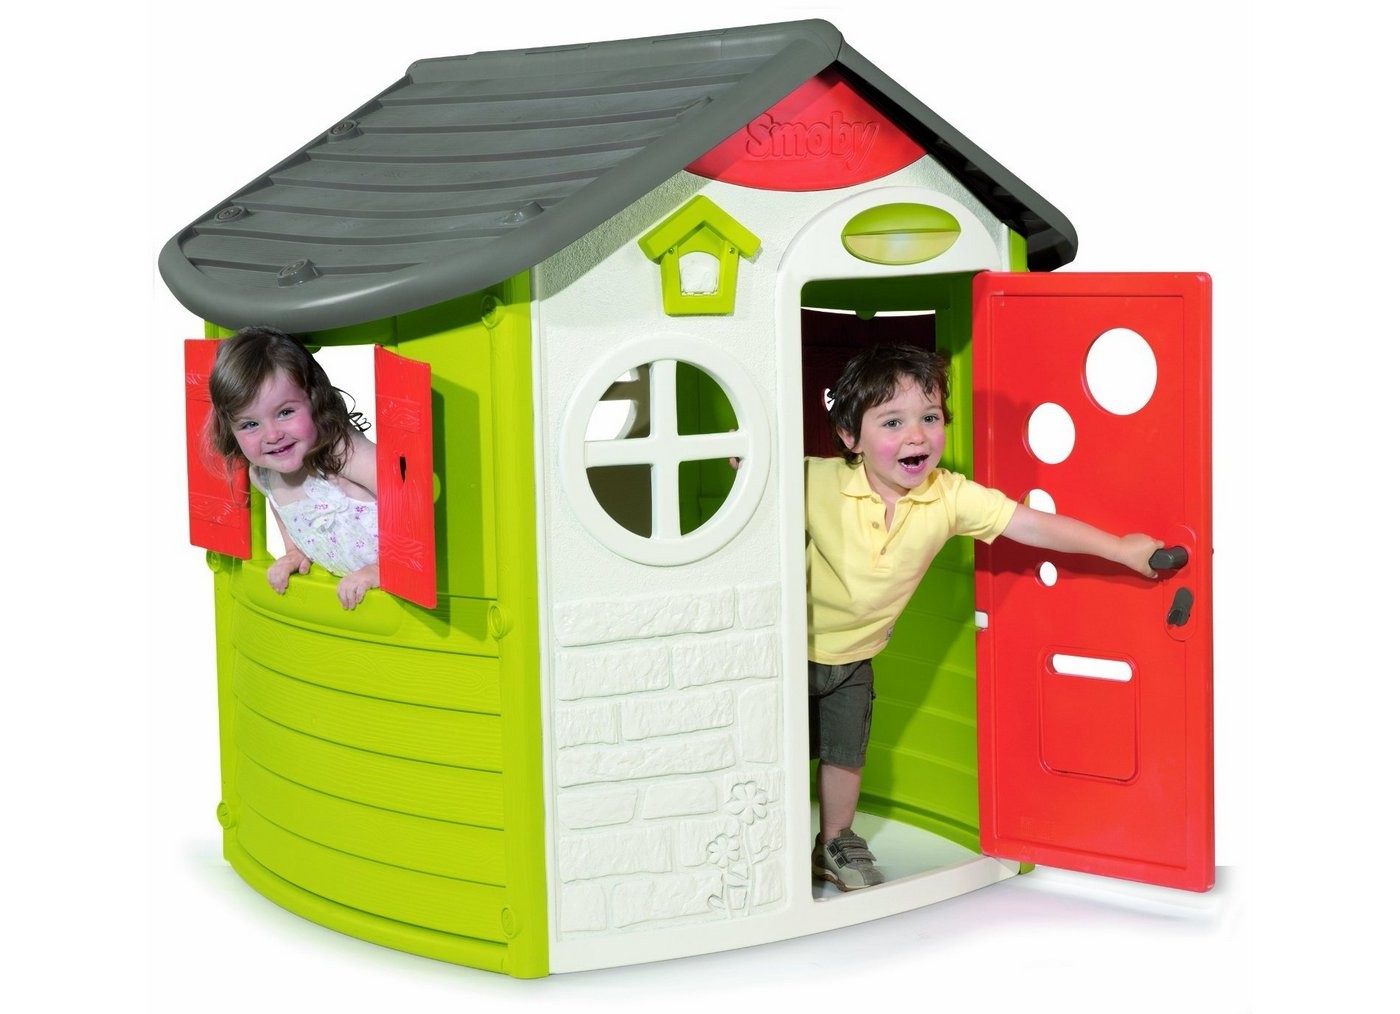  Детский игровой пластиковый домик JURA,  домик для дачи, артикул 310263, Smoby.